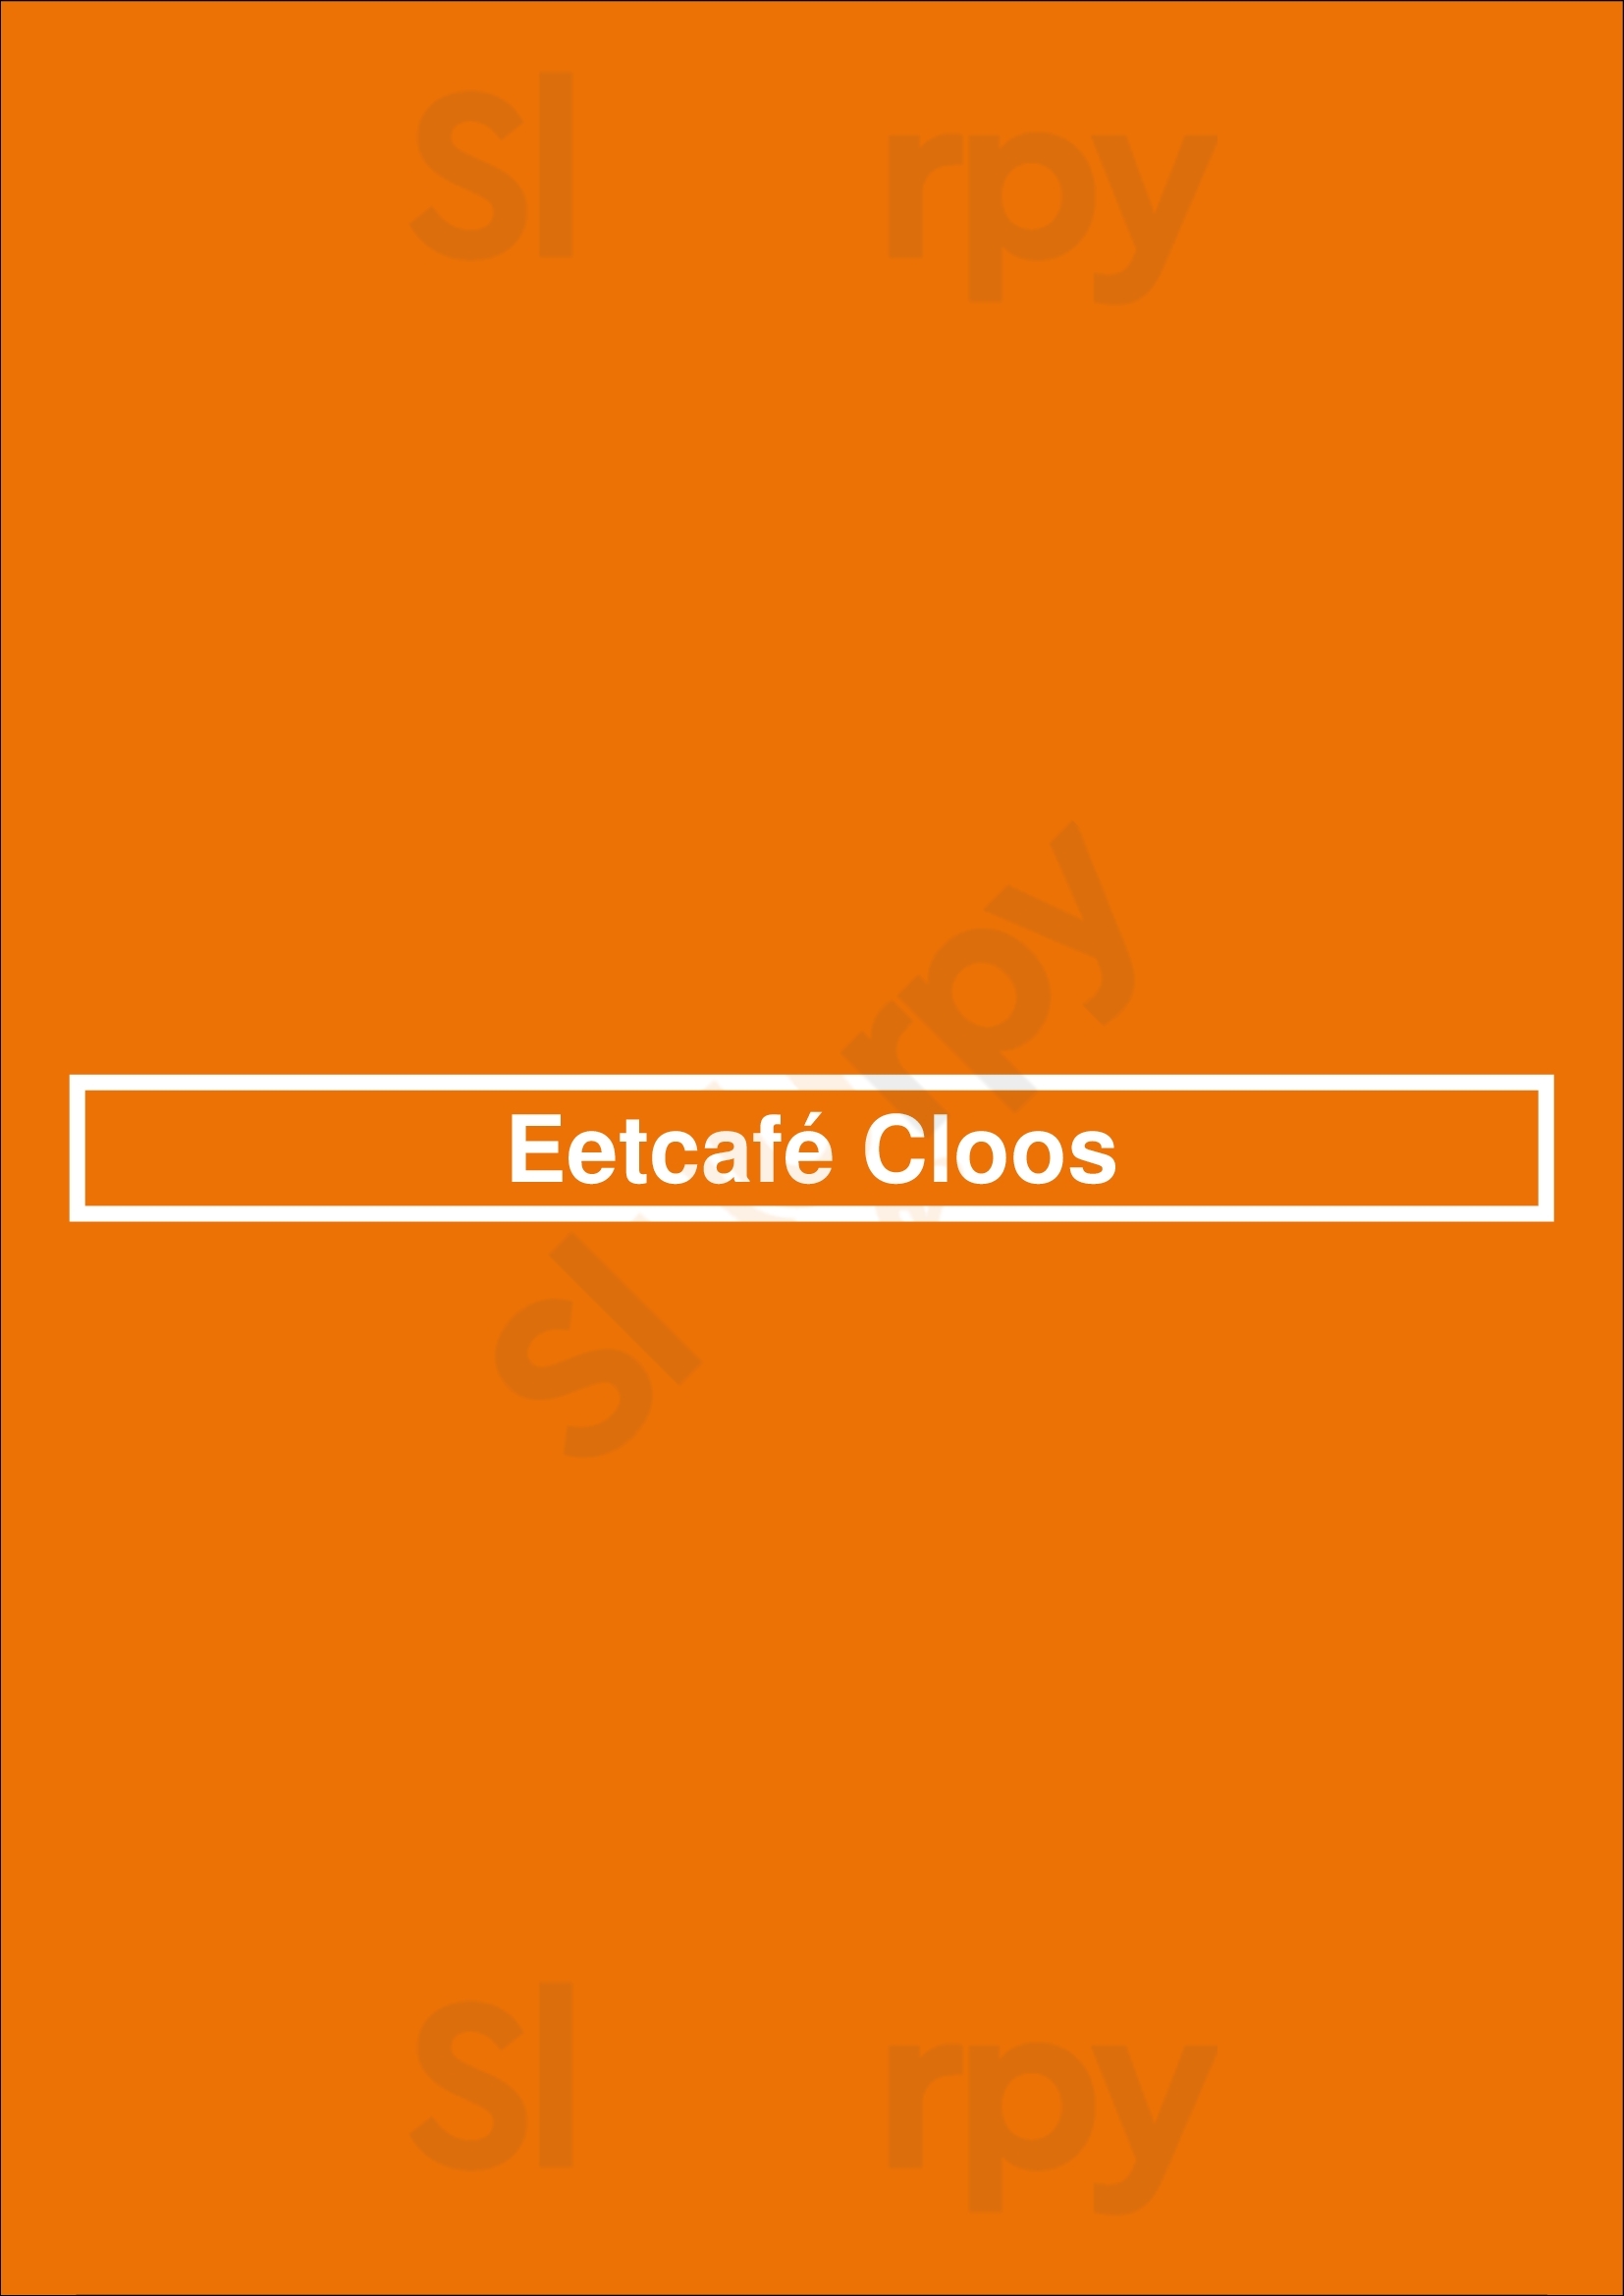 Eetcafé Cloos Den Haag Menu - 1